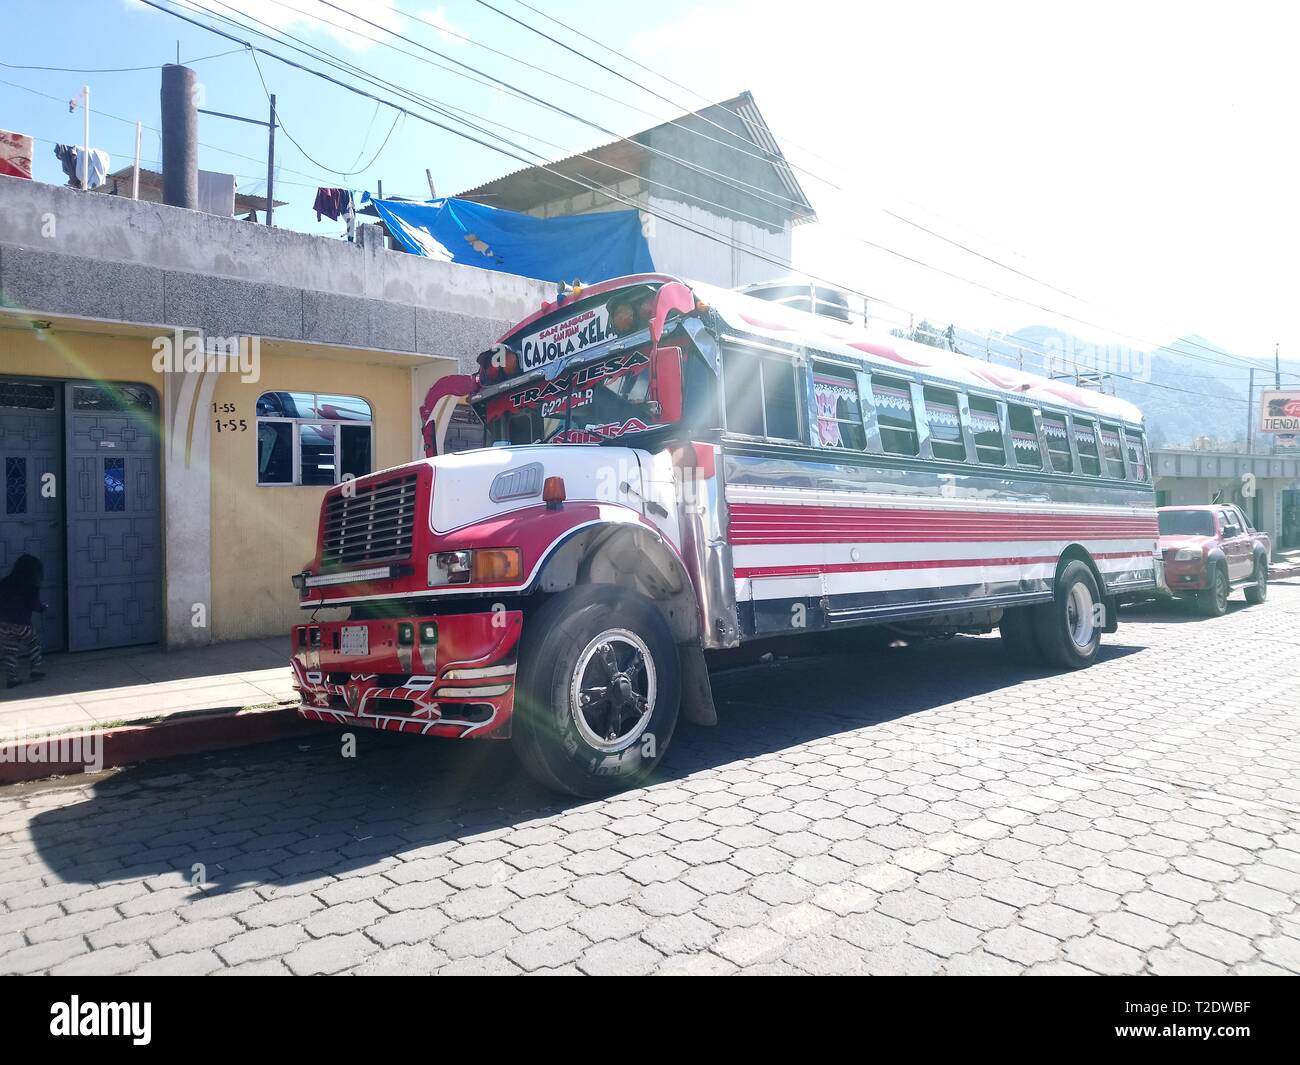 transporte publico transporte de parilla buses unicas en guatemala camioneta ruta a cajola a la ciudad del quetzal de los latos xela, guatemala bus Stock Photo